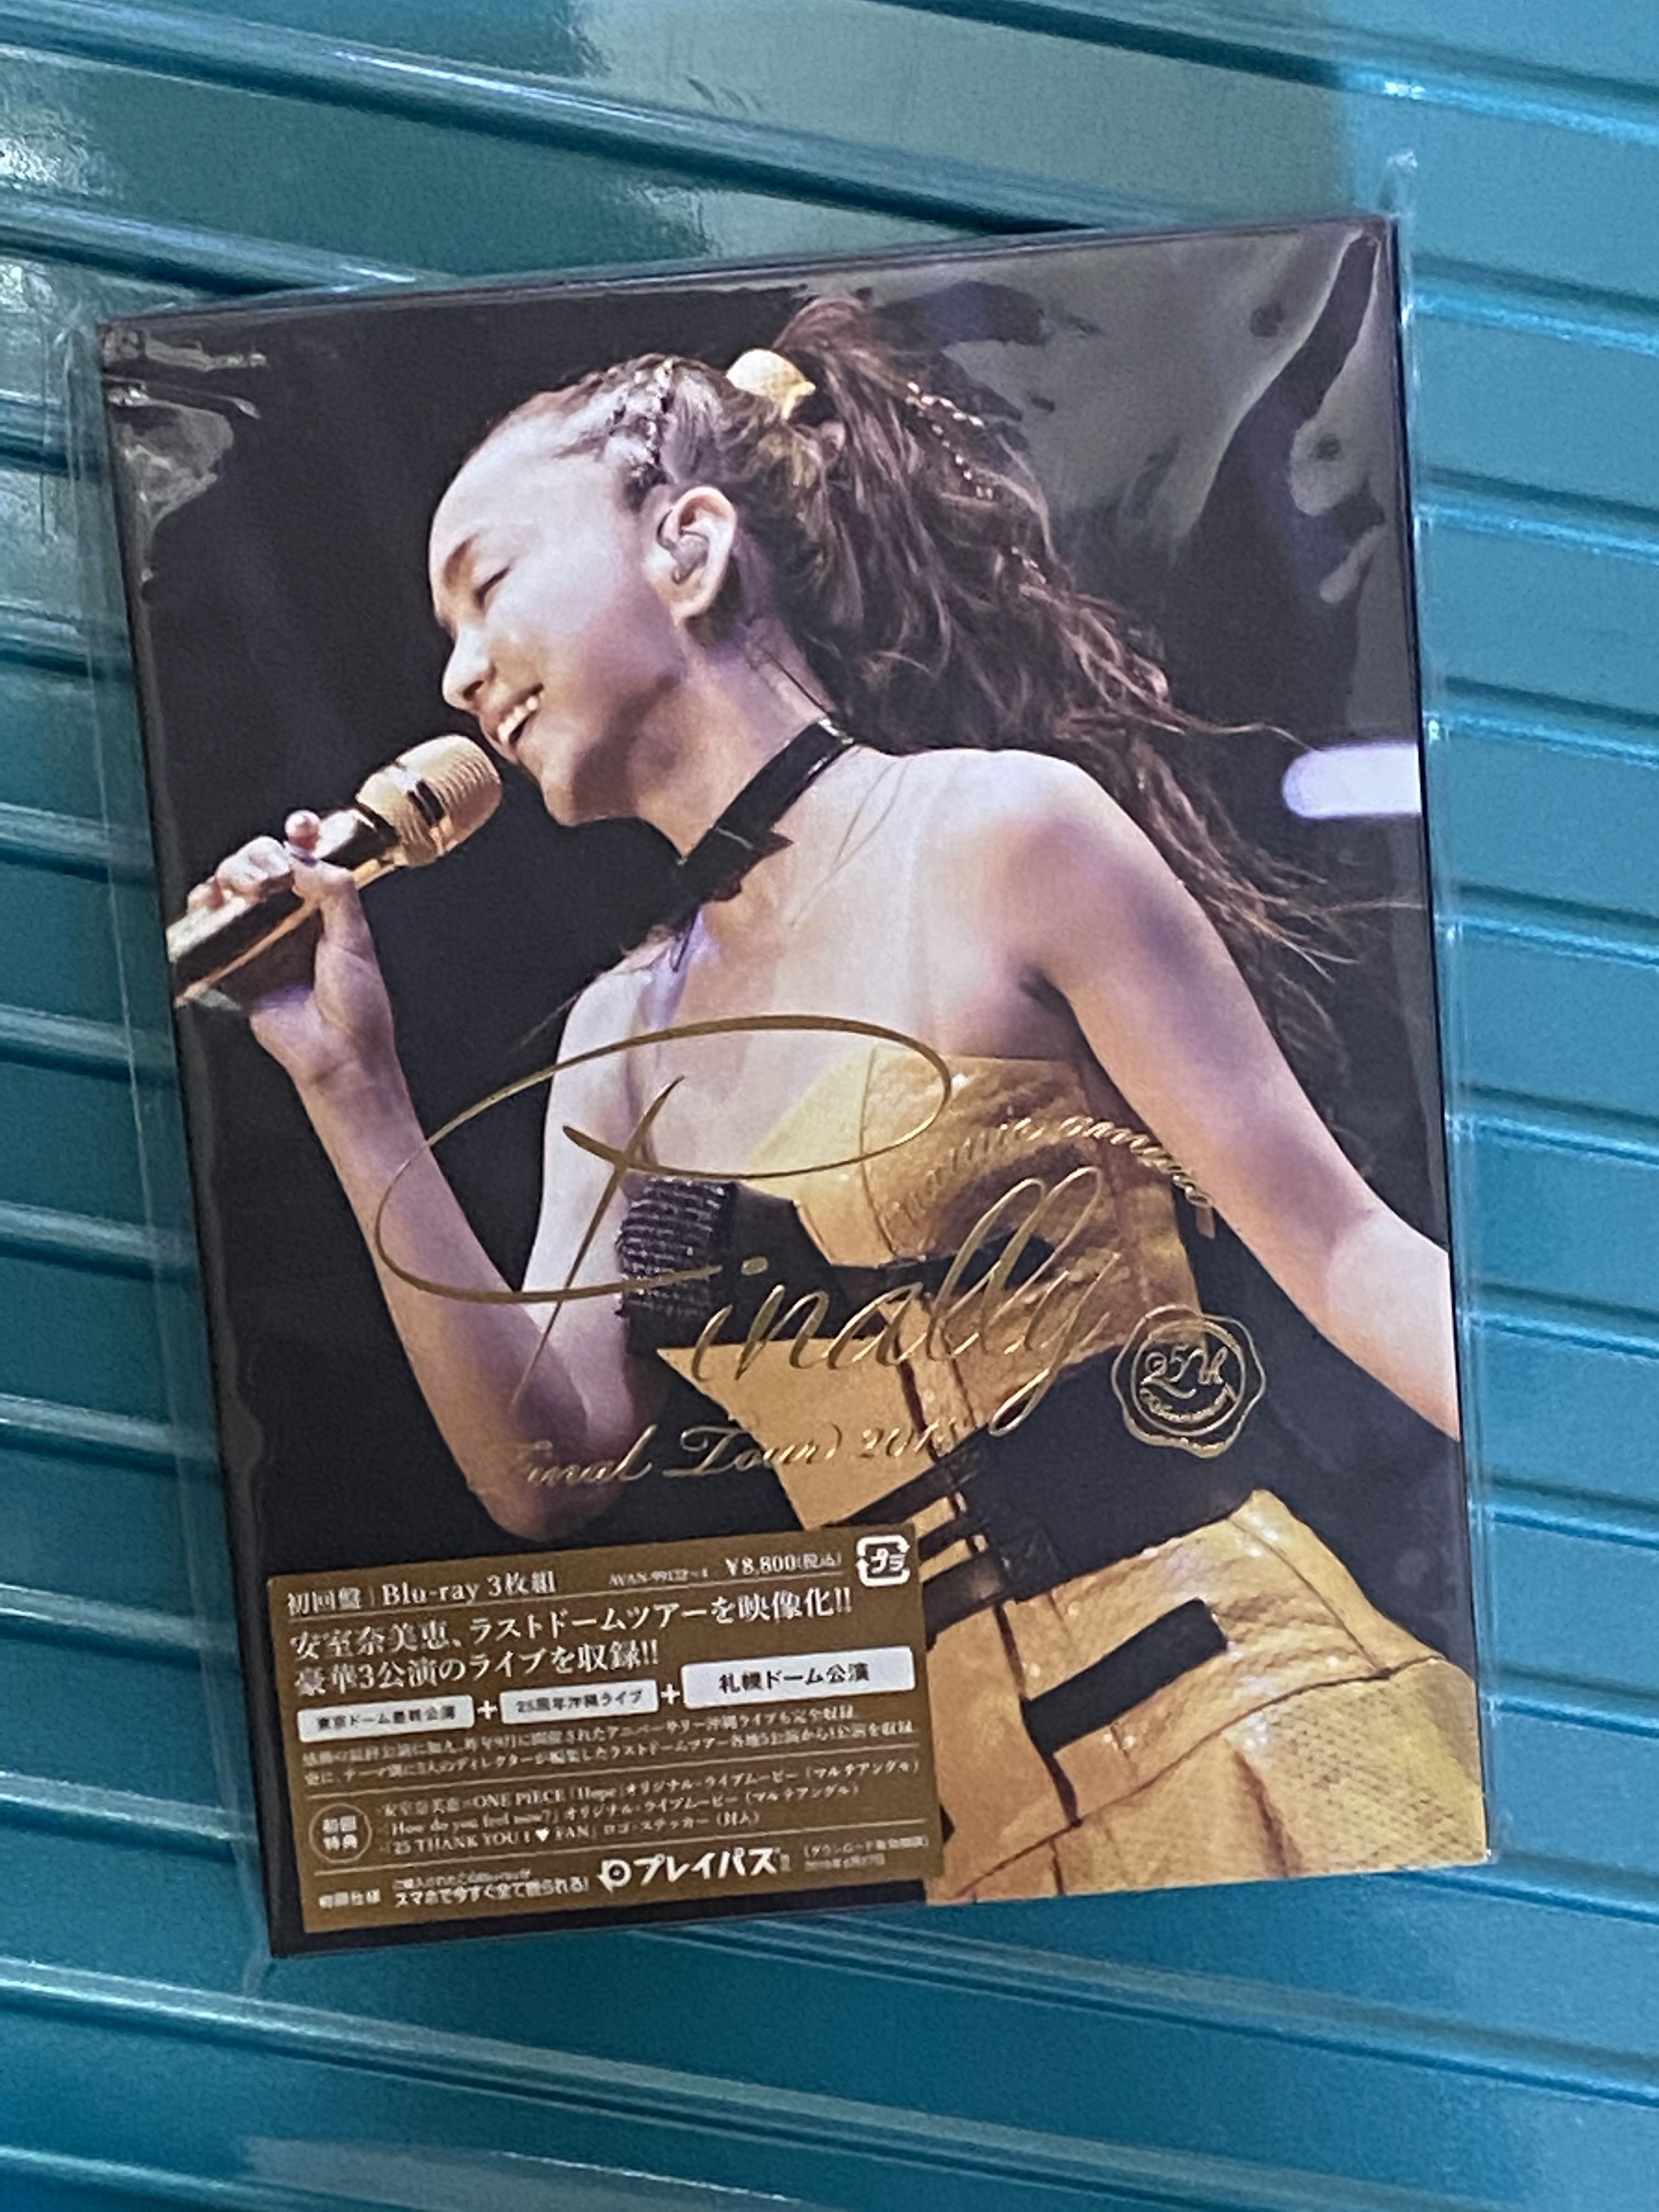 安室奈美恵 final Tour finally Blu-ray -